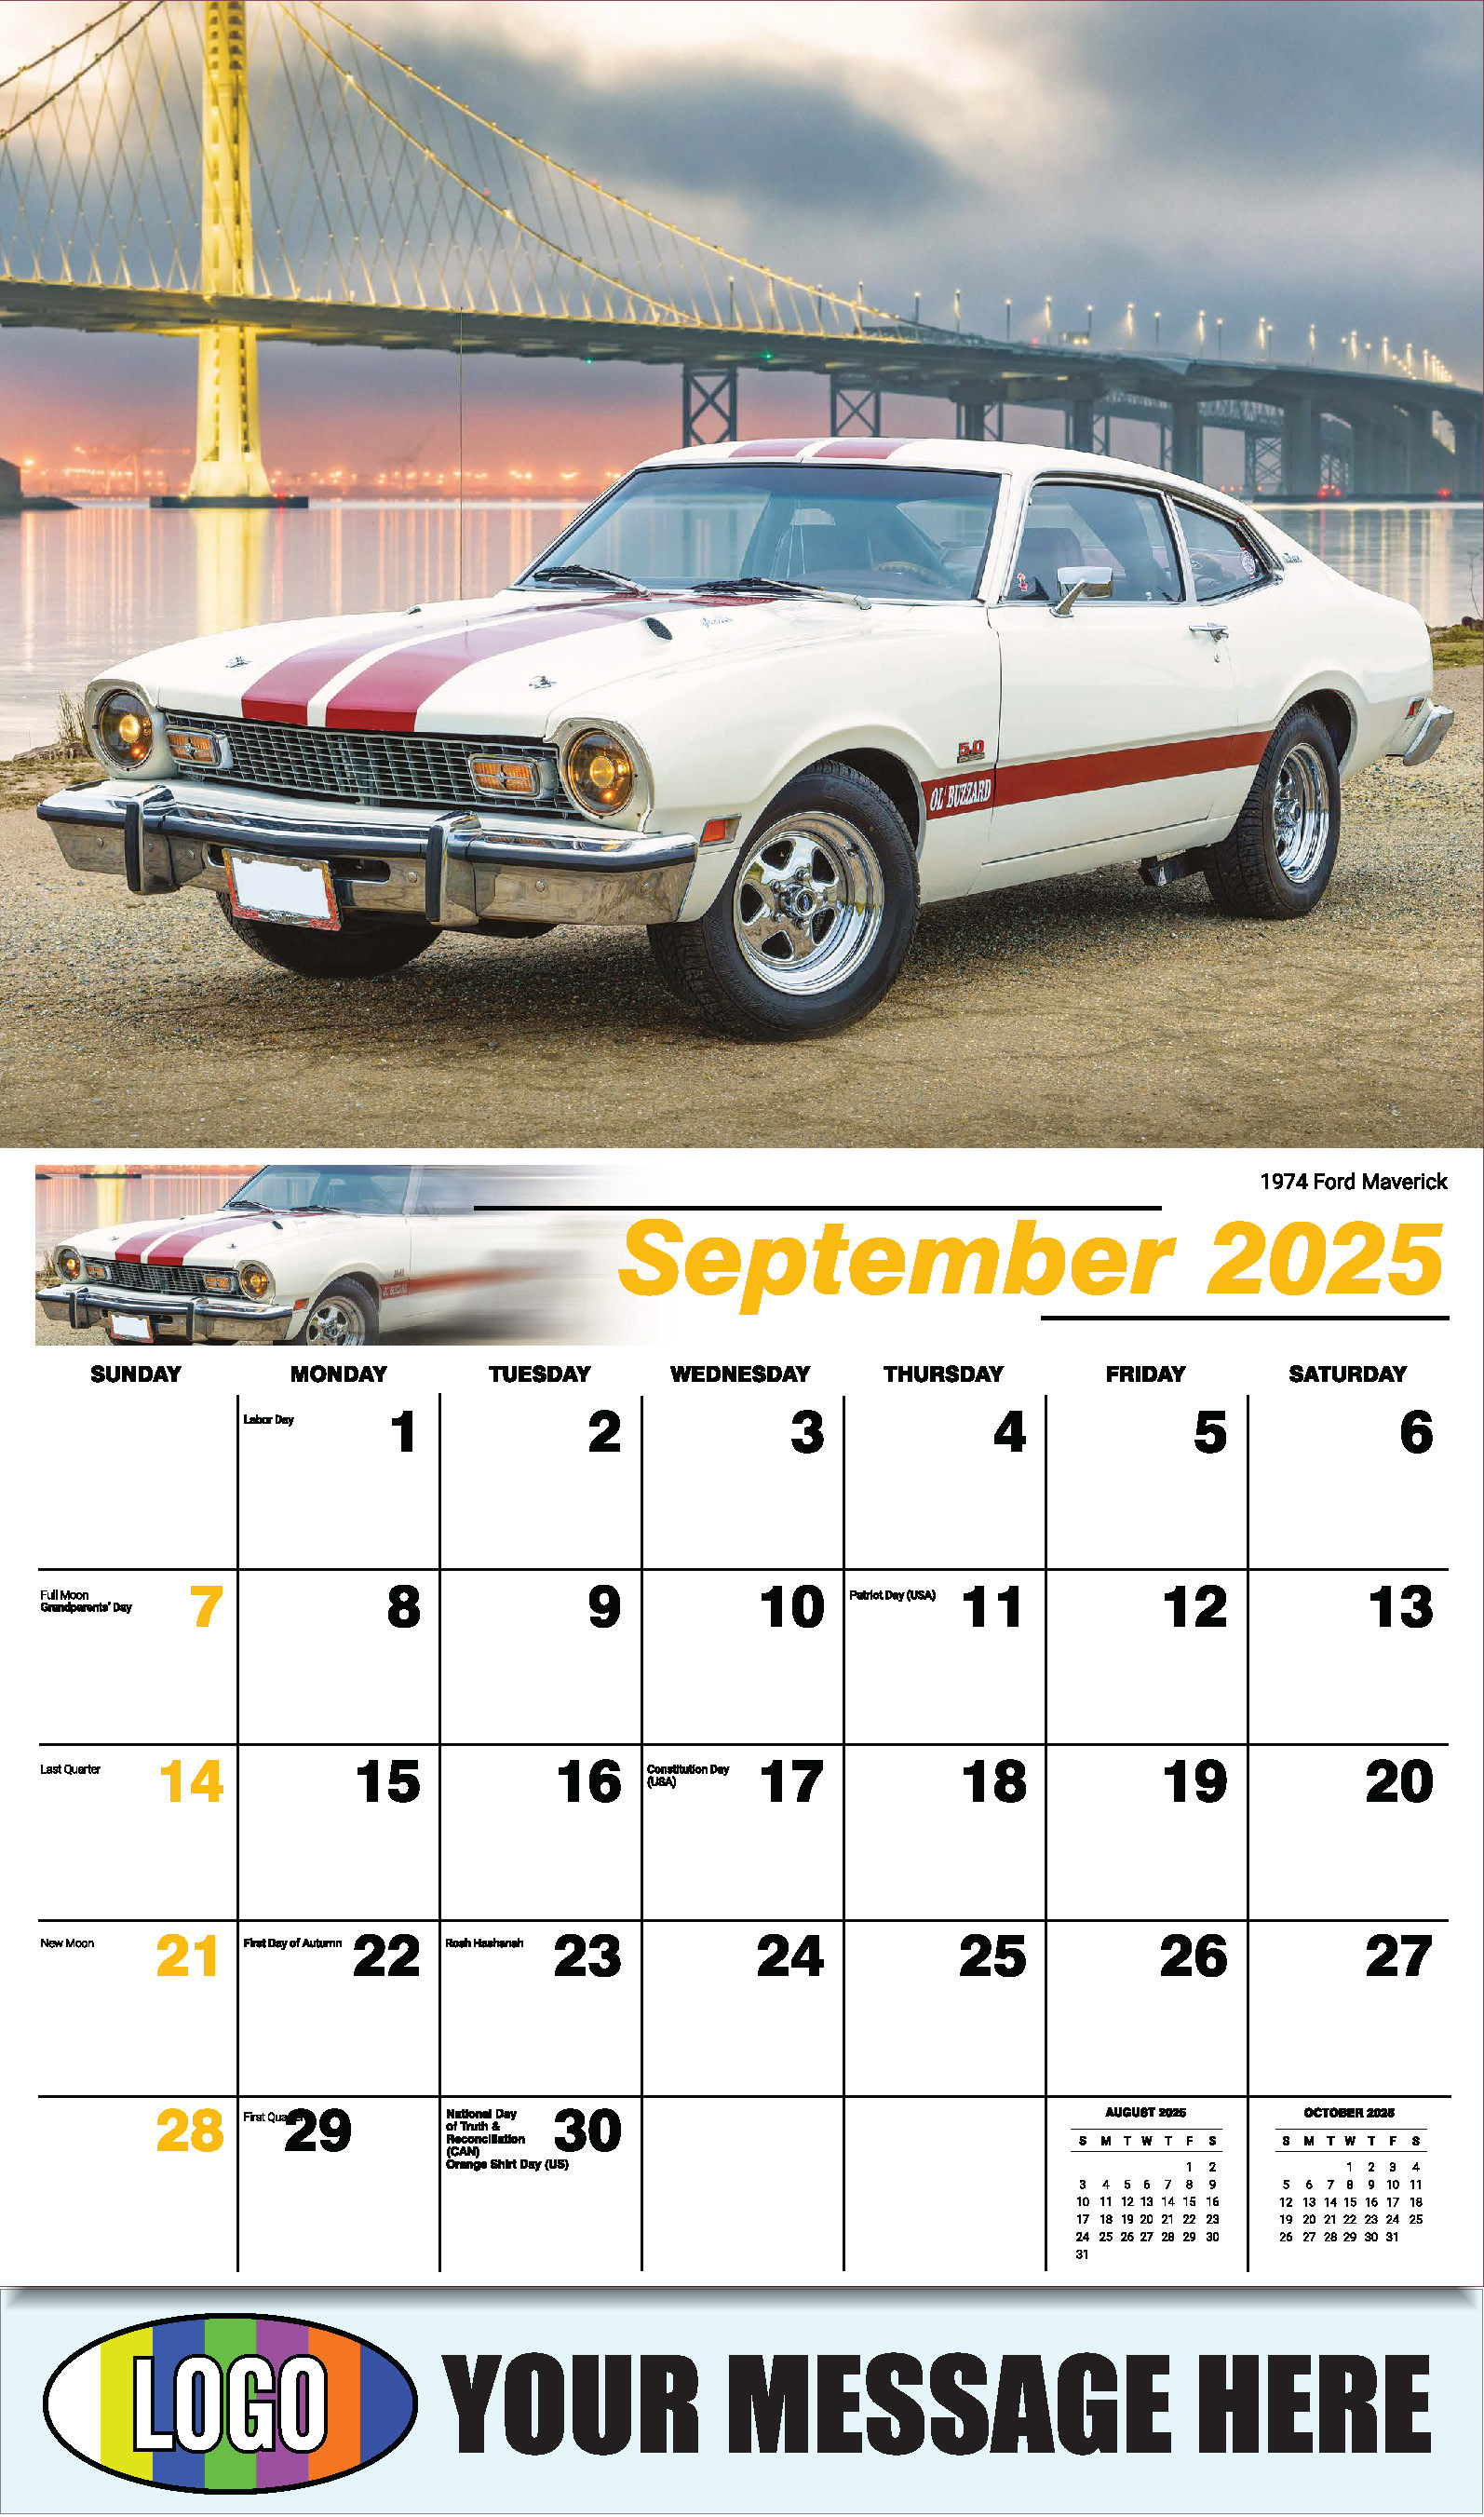 Classic Cars 2025 Automotive Business Promo Calendar - September